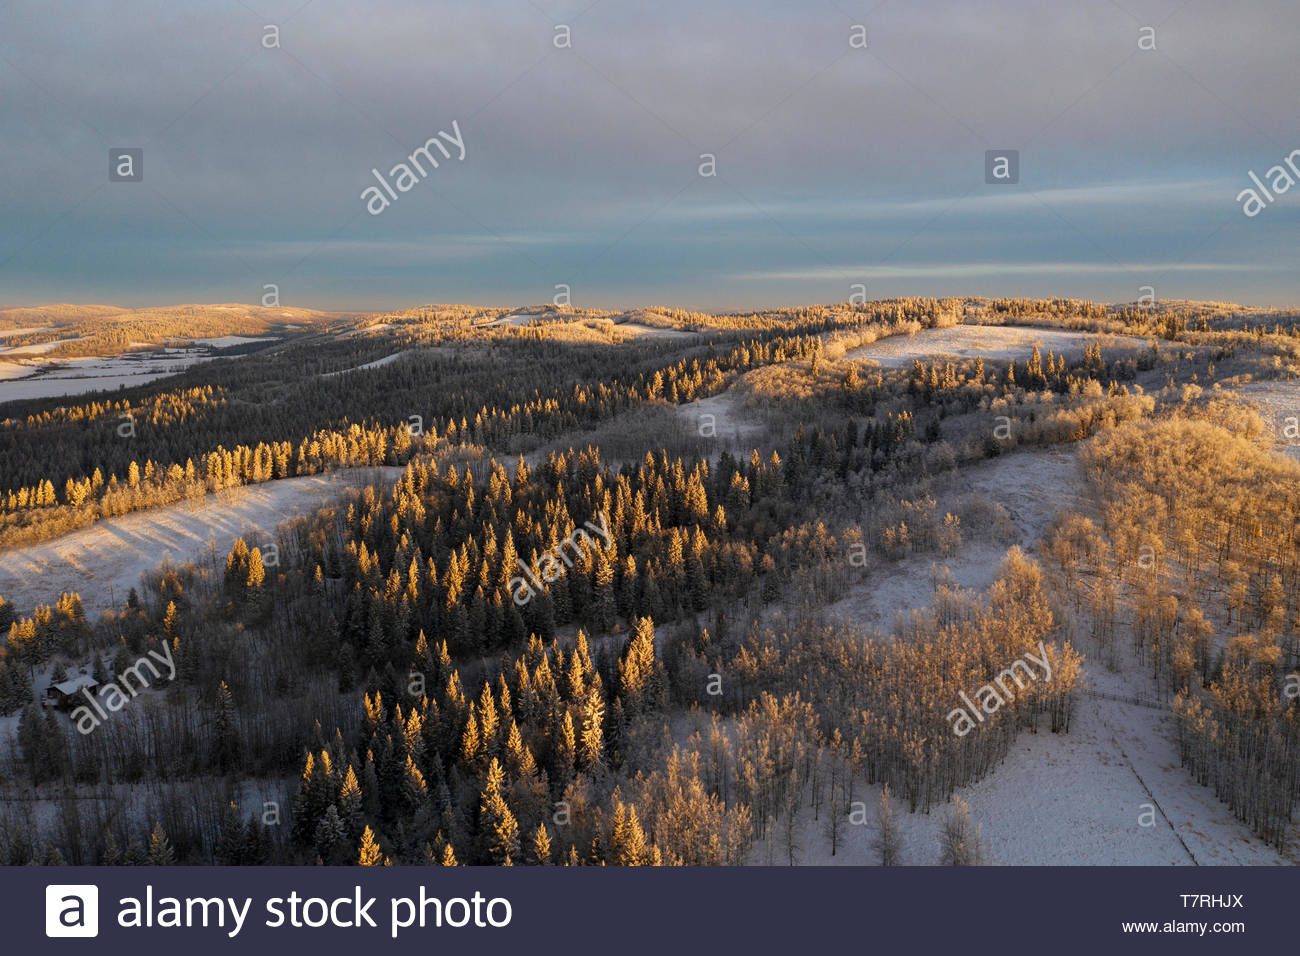 Scenic view snowy tree landscape, Alberta, Canada Stock Photo